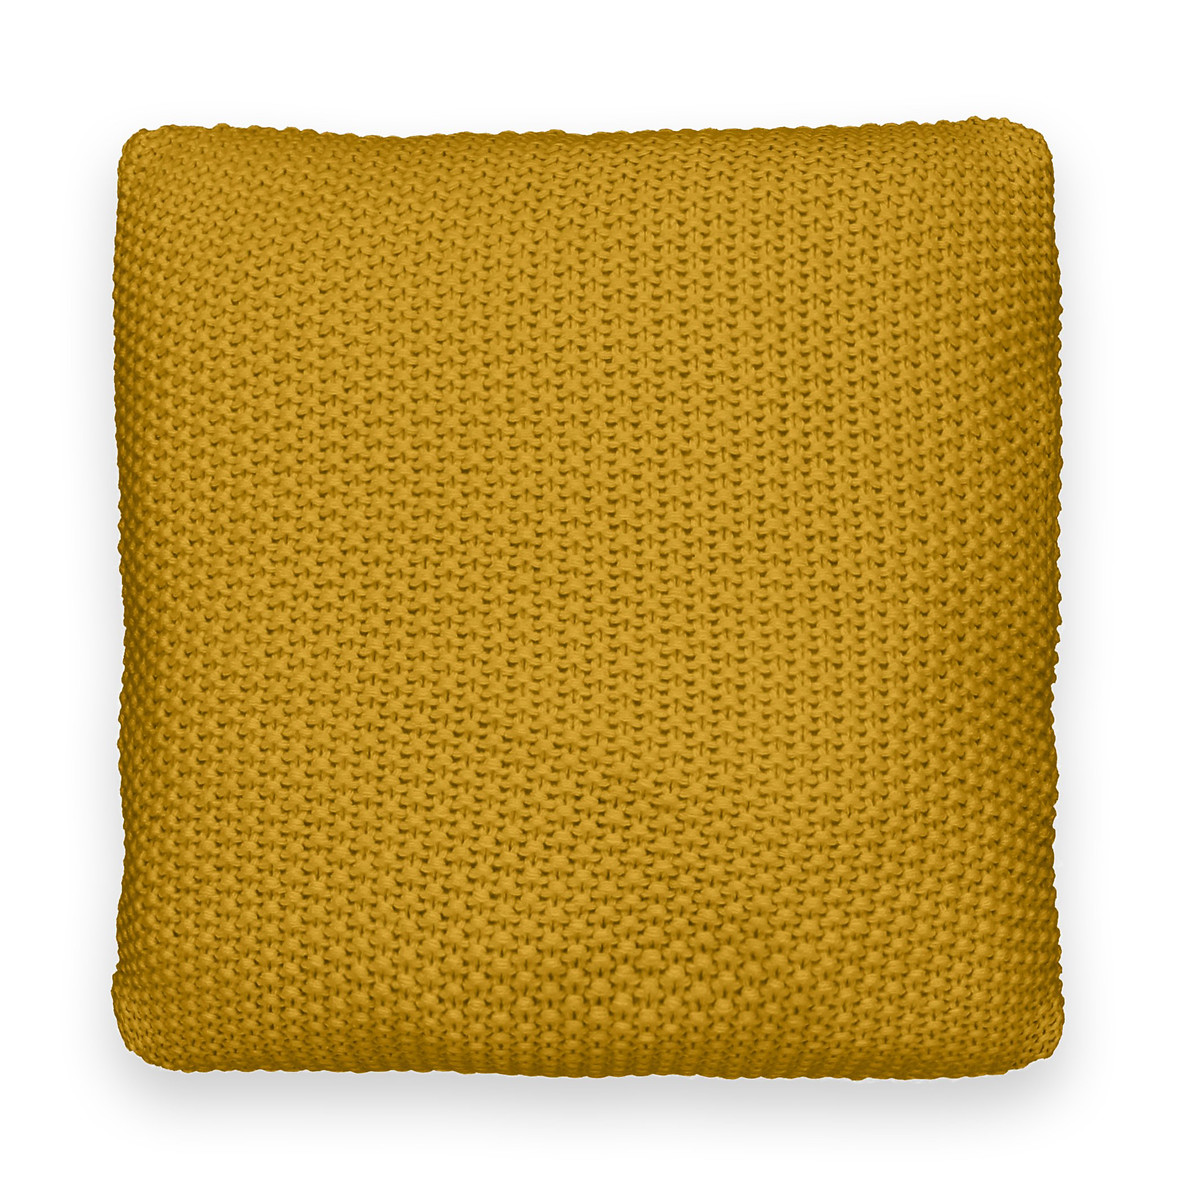 Чехол на подушку из трикотажа WESTPORT 45 x 45 см желтый чехол на подушку baia 45 x 45 см другие